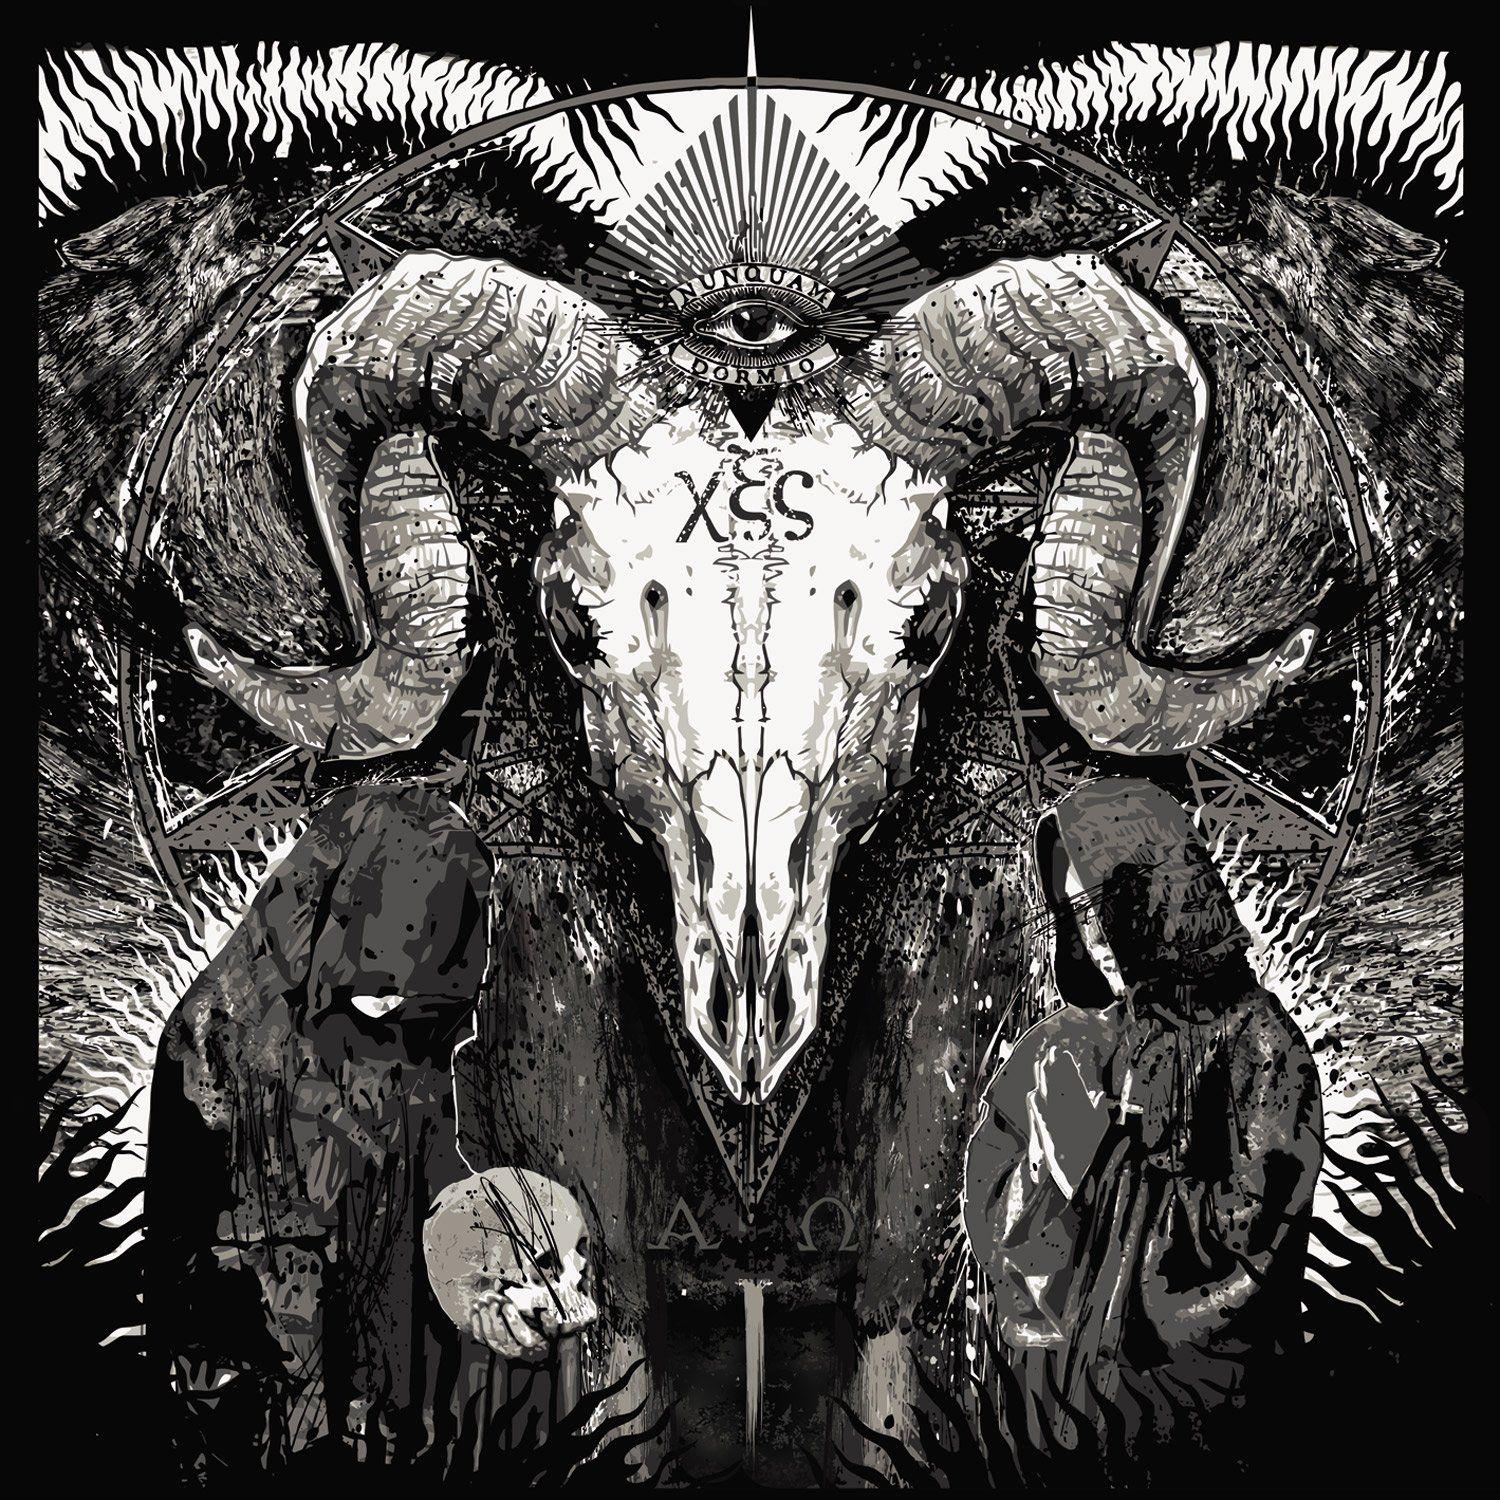 Satanic dark satan skull evil occult wallpaperx1500